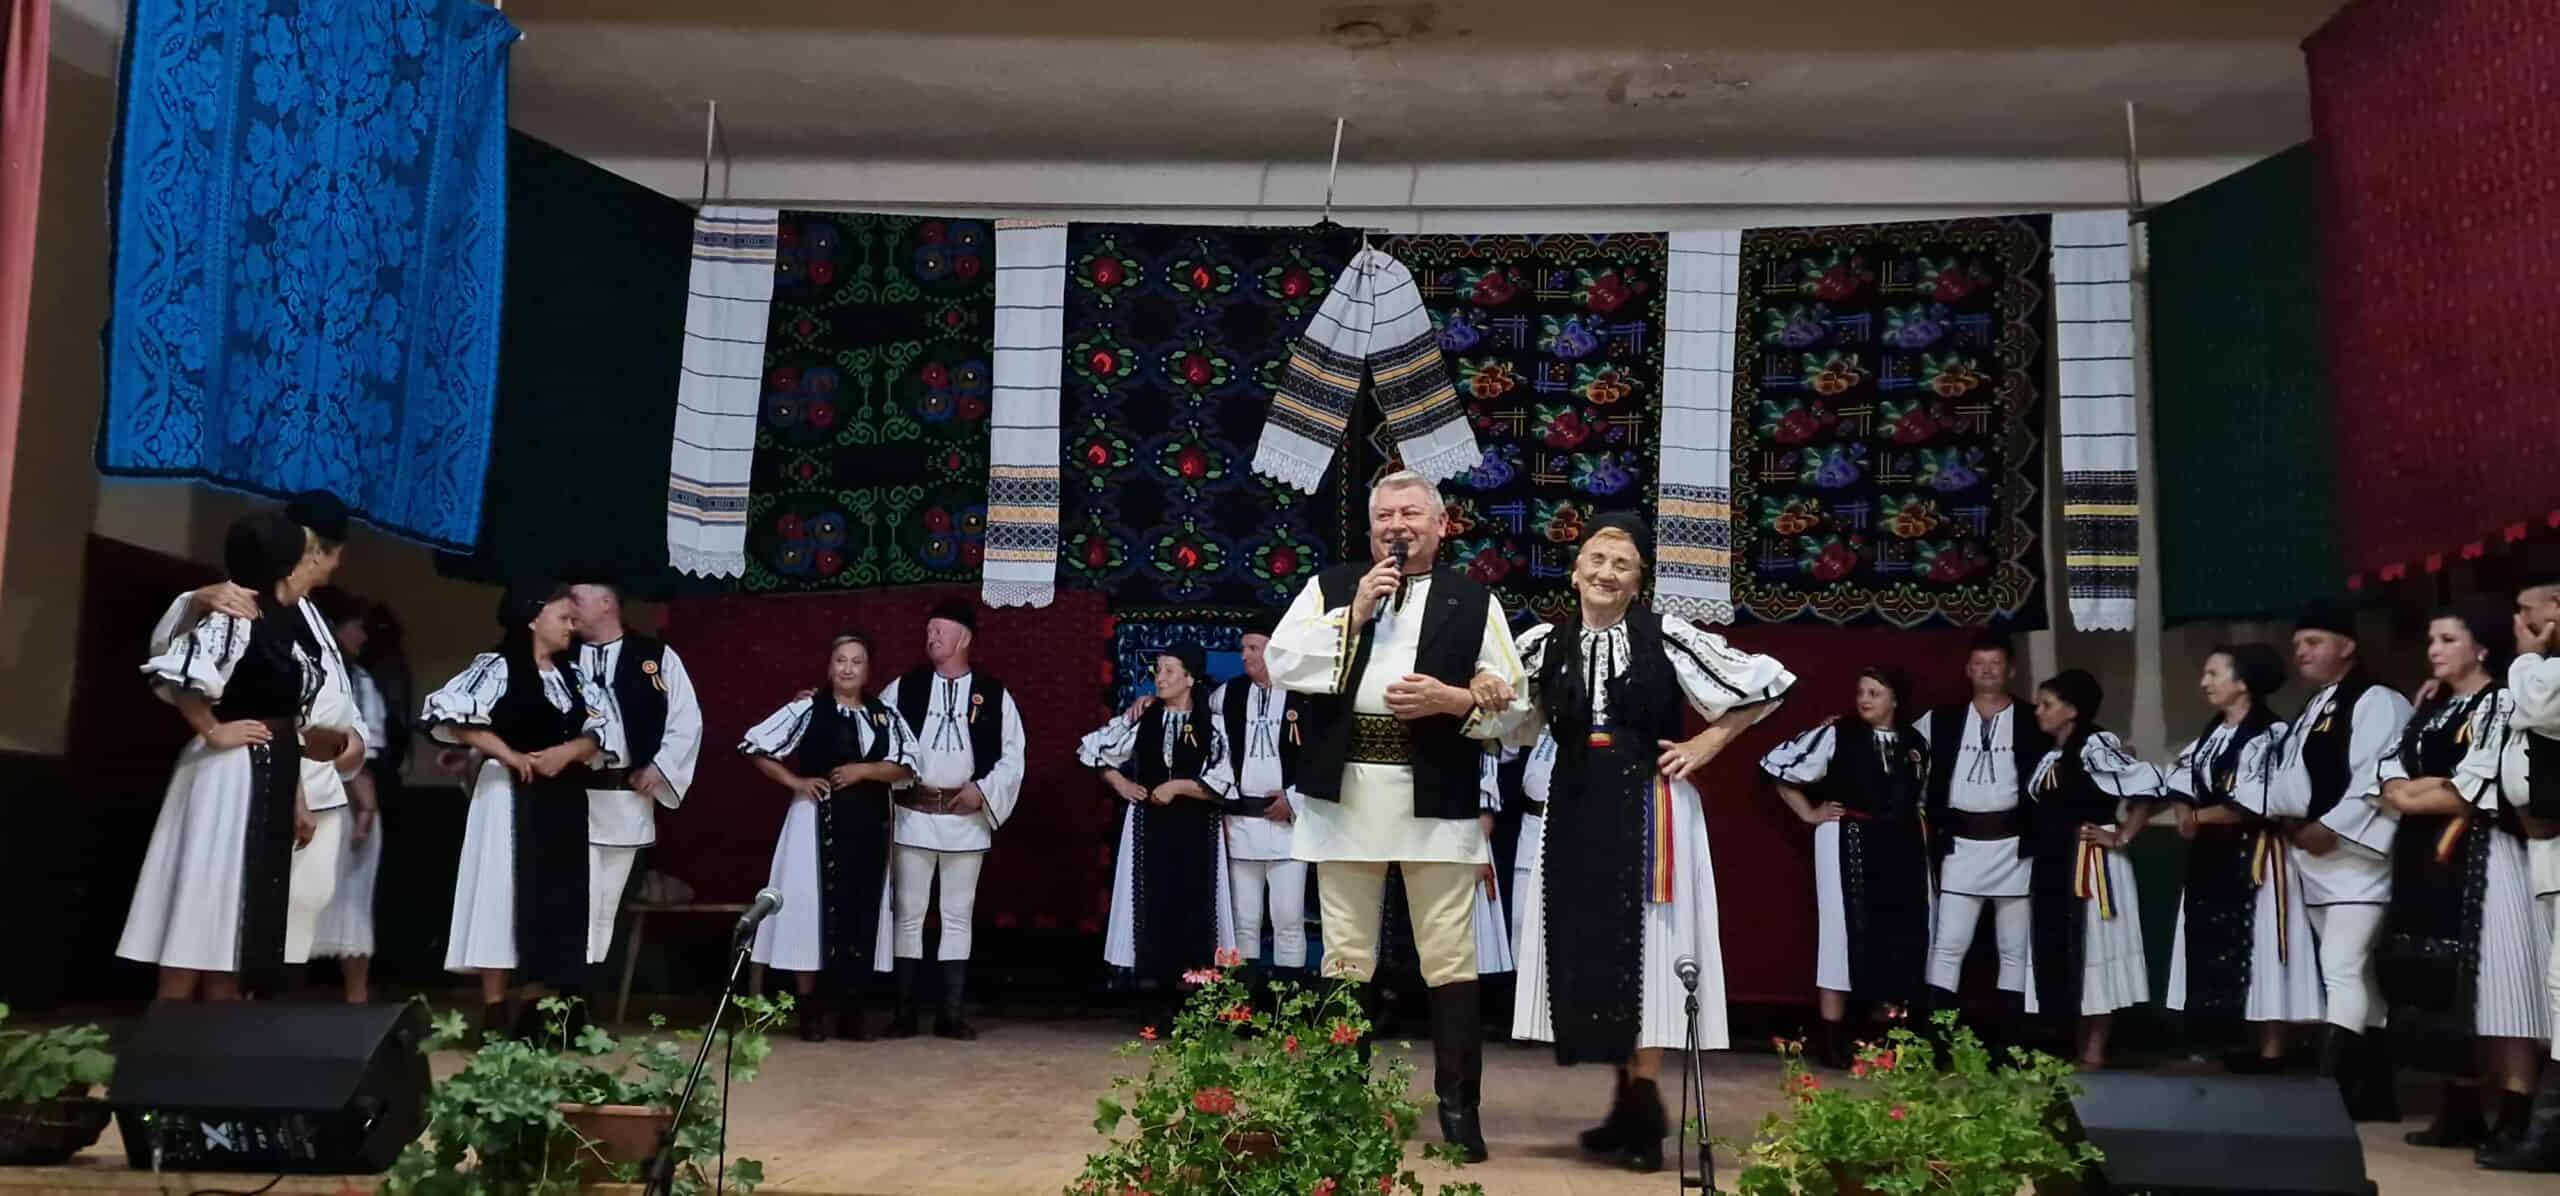 doamna silvia macrea senior – cetățean de onoare al comunei bârghiș (foto)